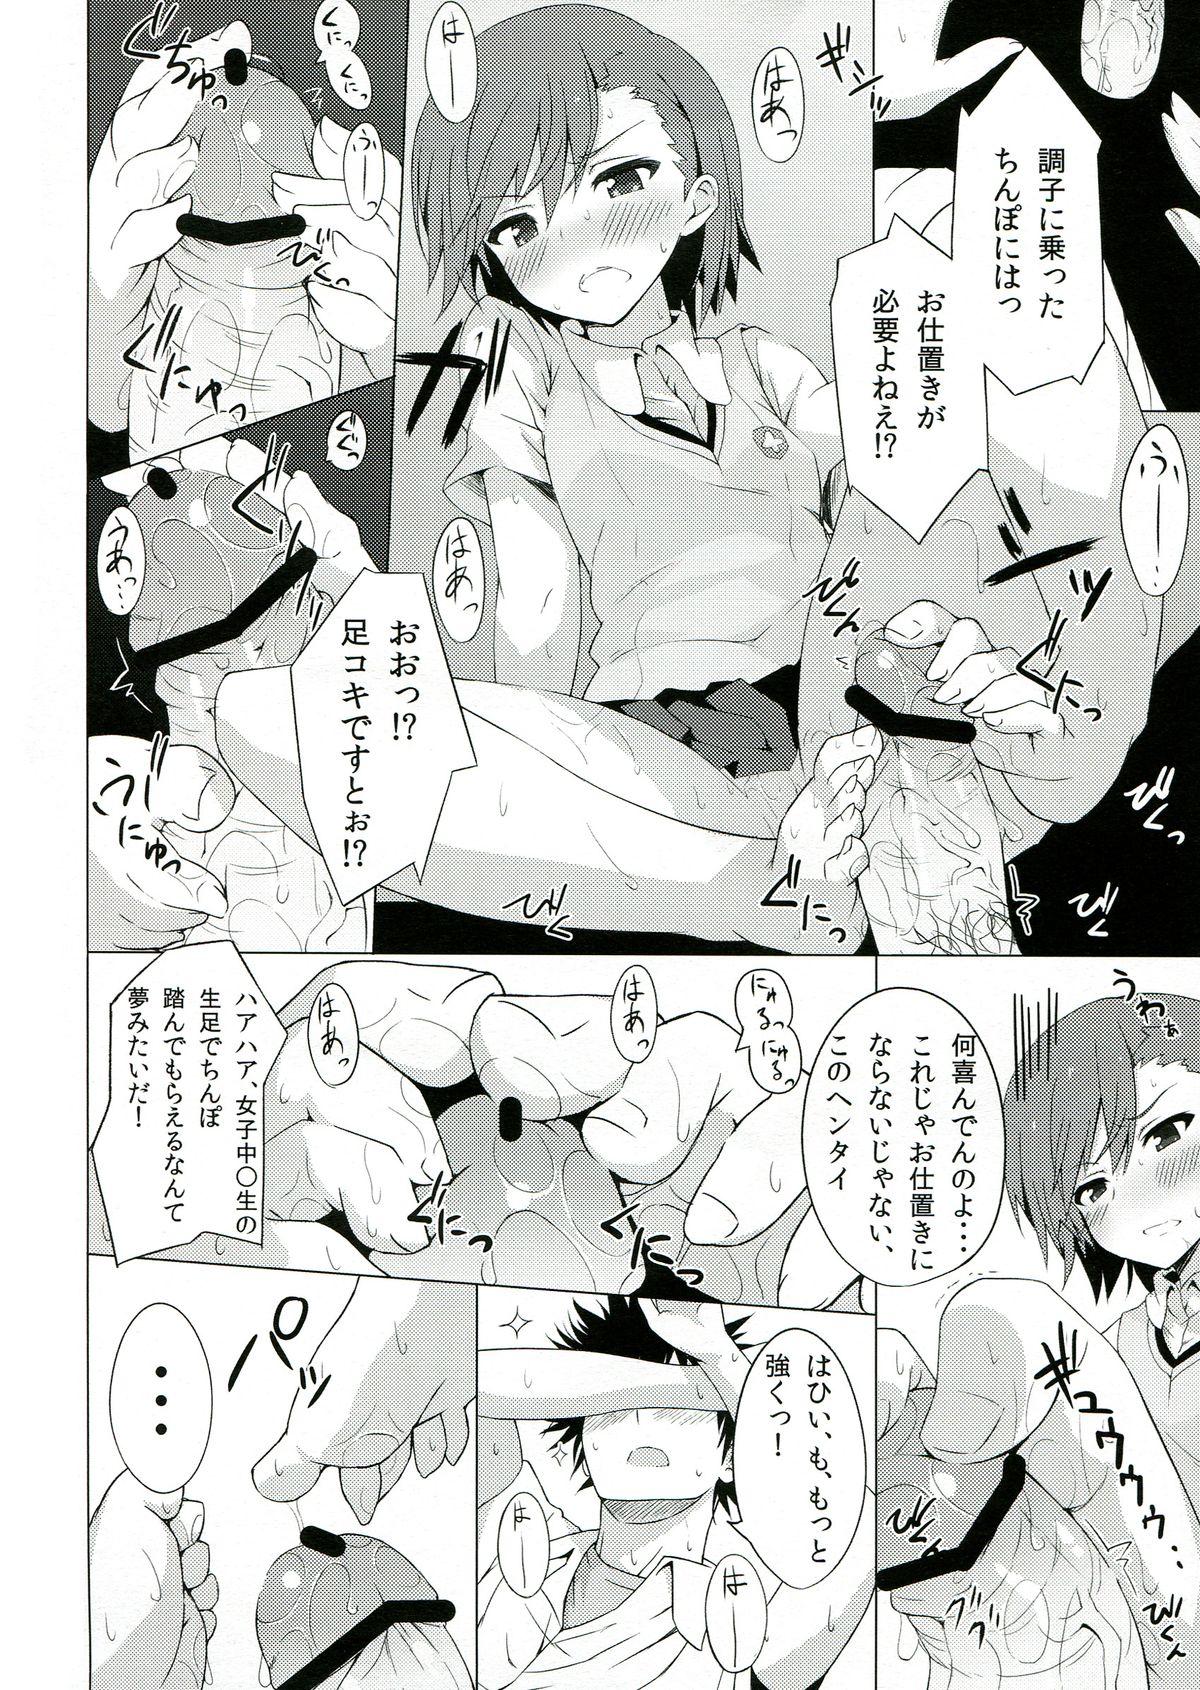 Time BiriBiri Shock! - Toaru kagaku no railgun Fetish - Page 12